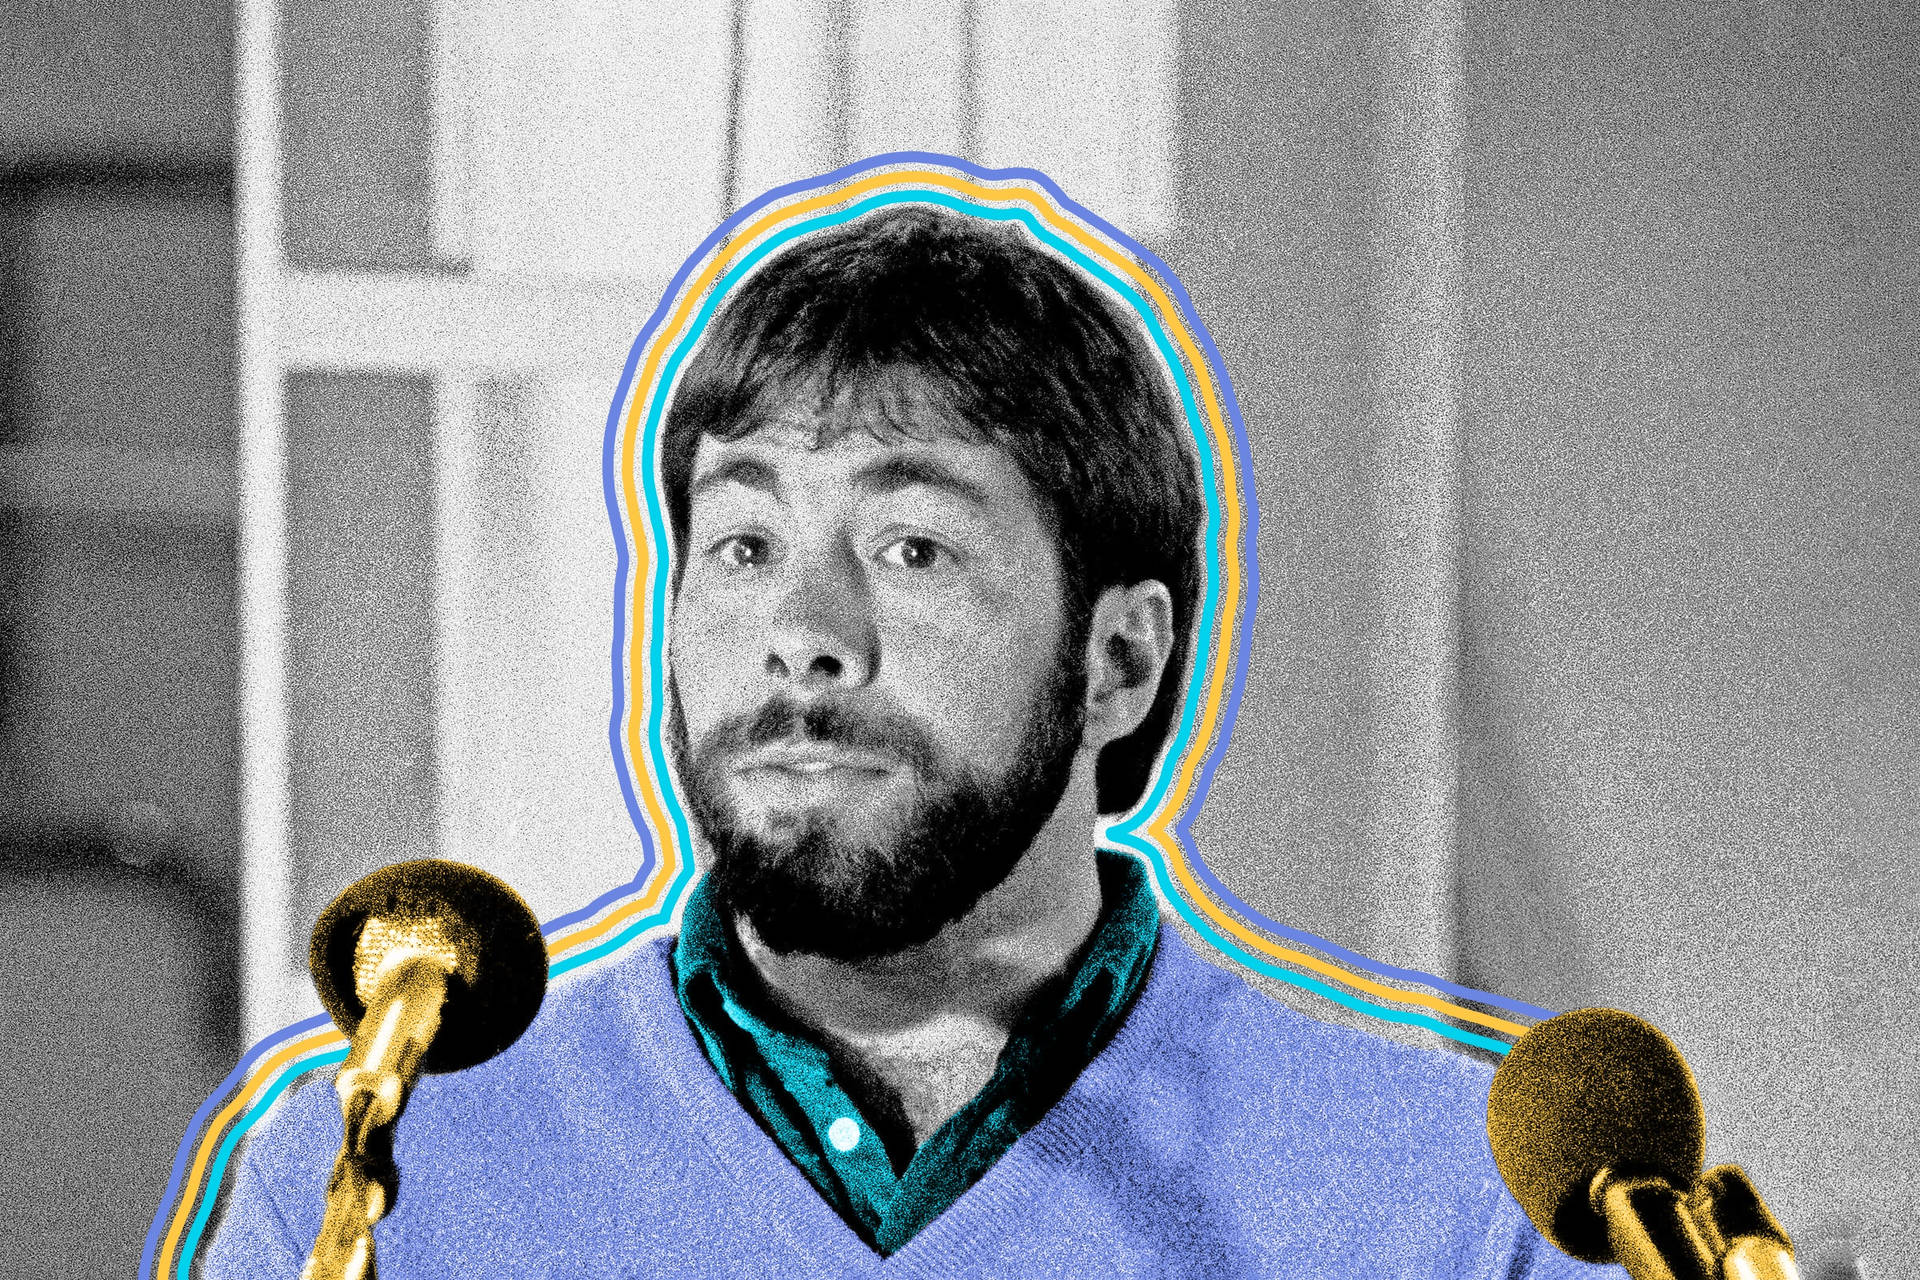 Steve Wozniak 2400 X 1600 Wallpaper